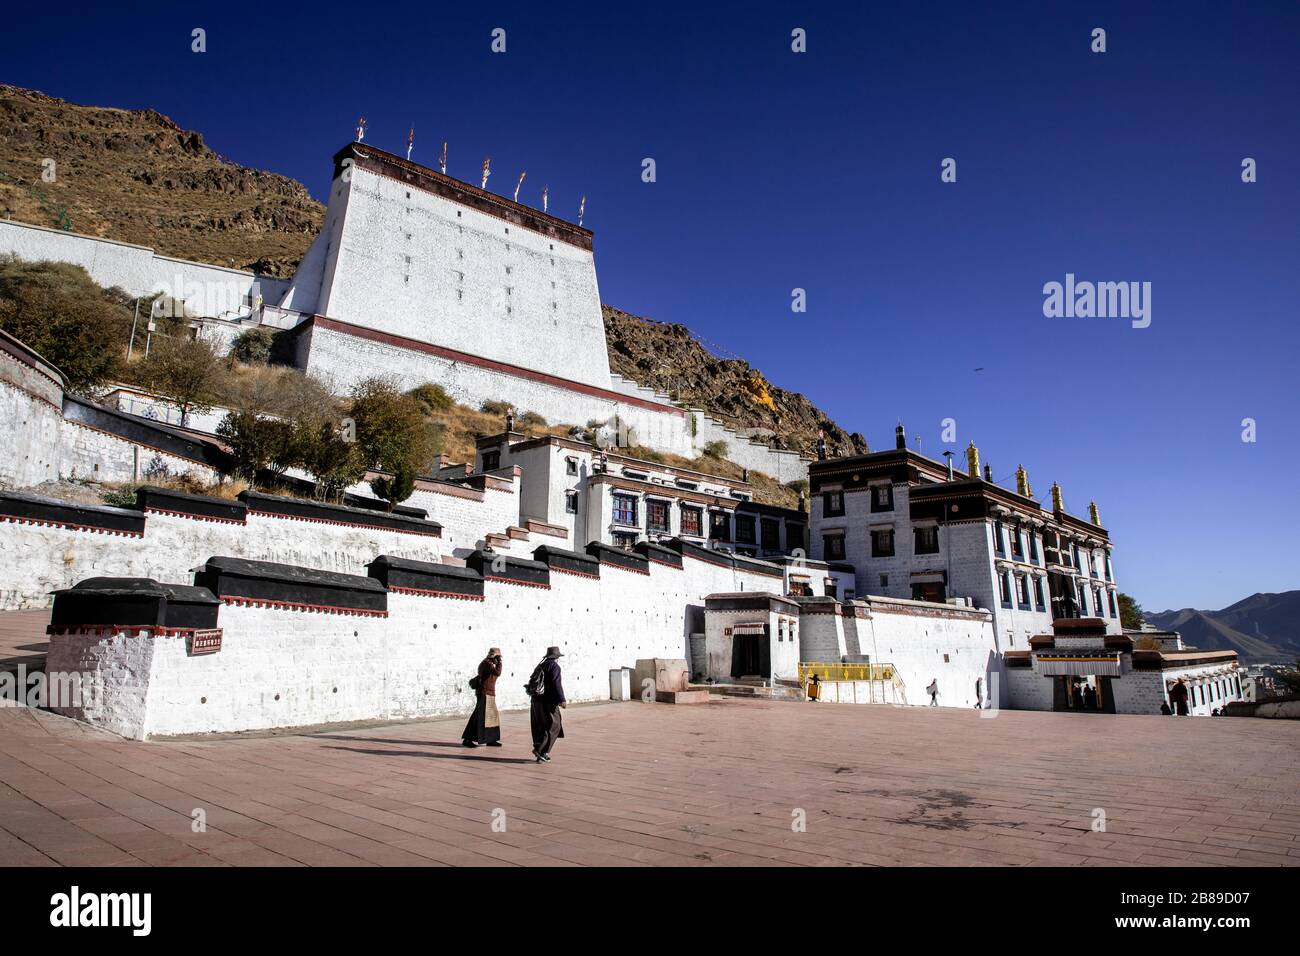 Tashi Lhunpo Monastery in Shigatse, Tibet Stock Photo